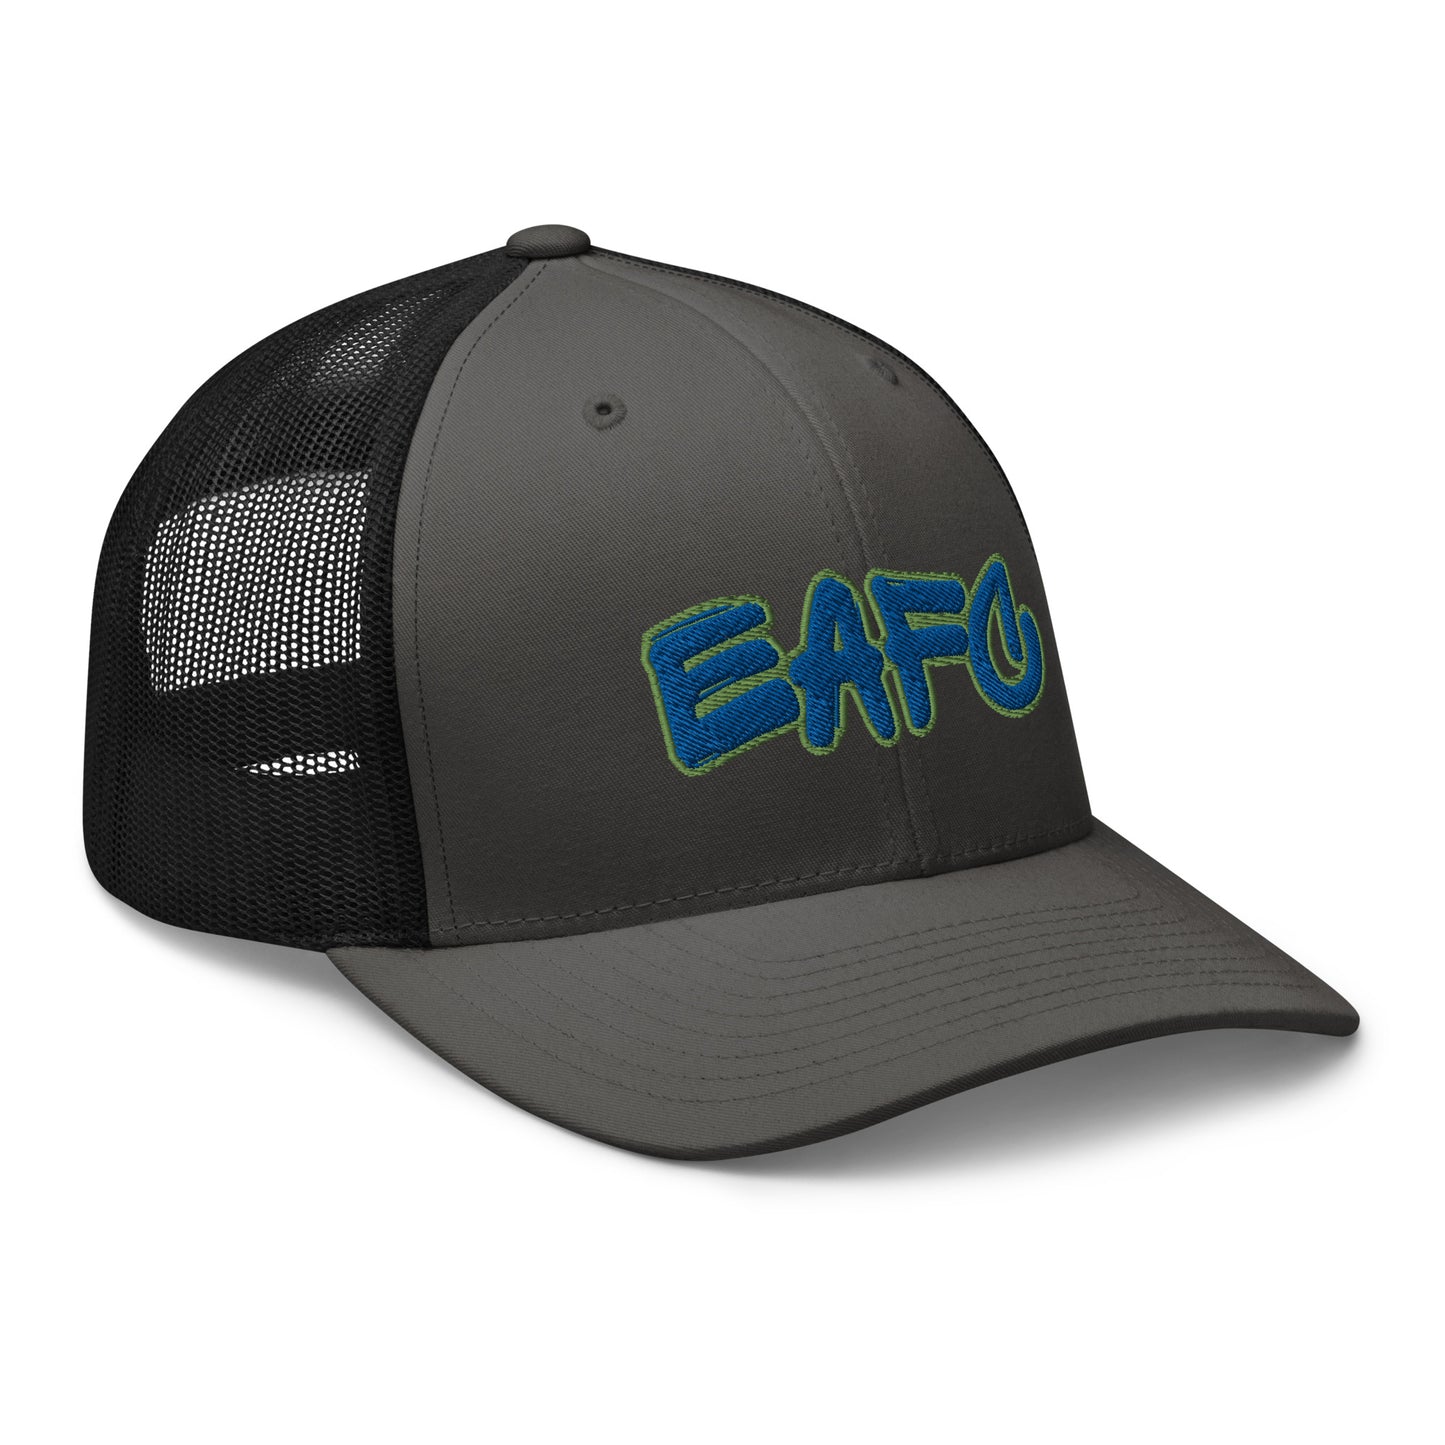 EAFC Trucker Cap